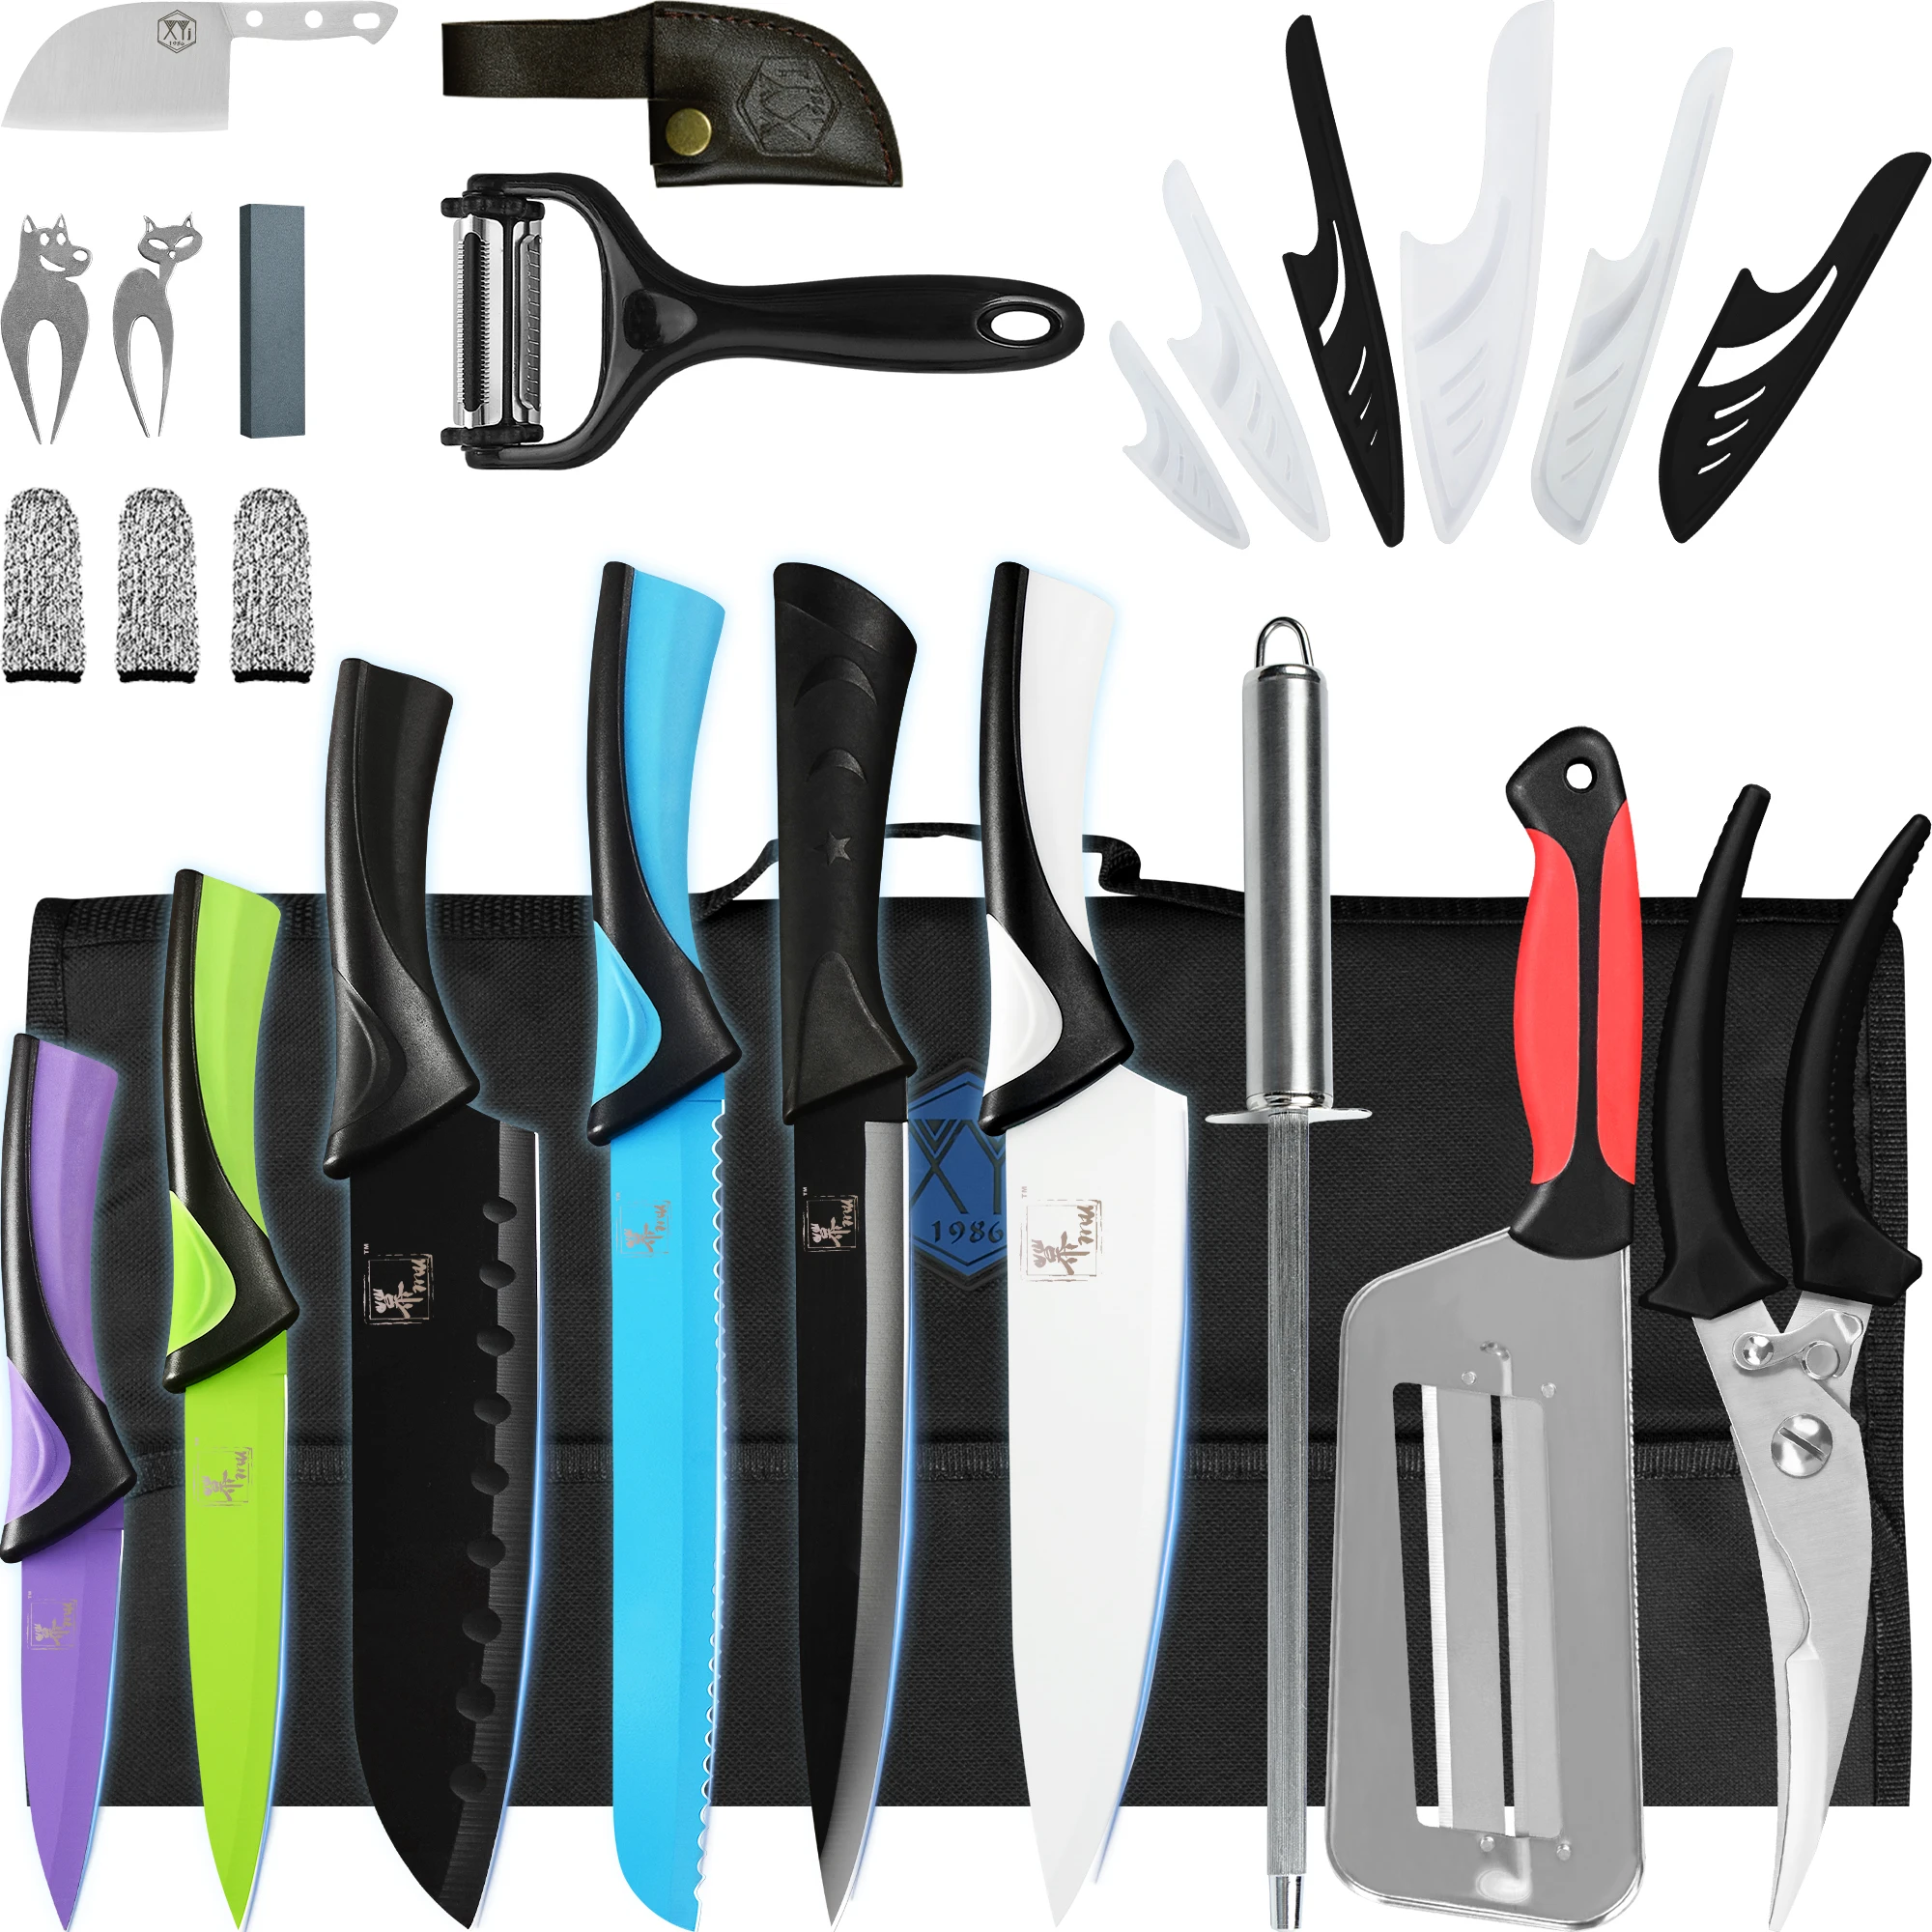 

Набор ножей шеф-повара 6 шт., набор профессиональных цветных кухонных ножей из нержавеющей стали с рулонной сумкой, для заточки, ножниц